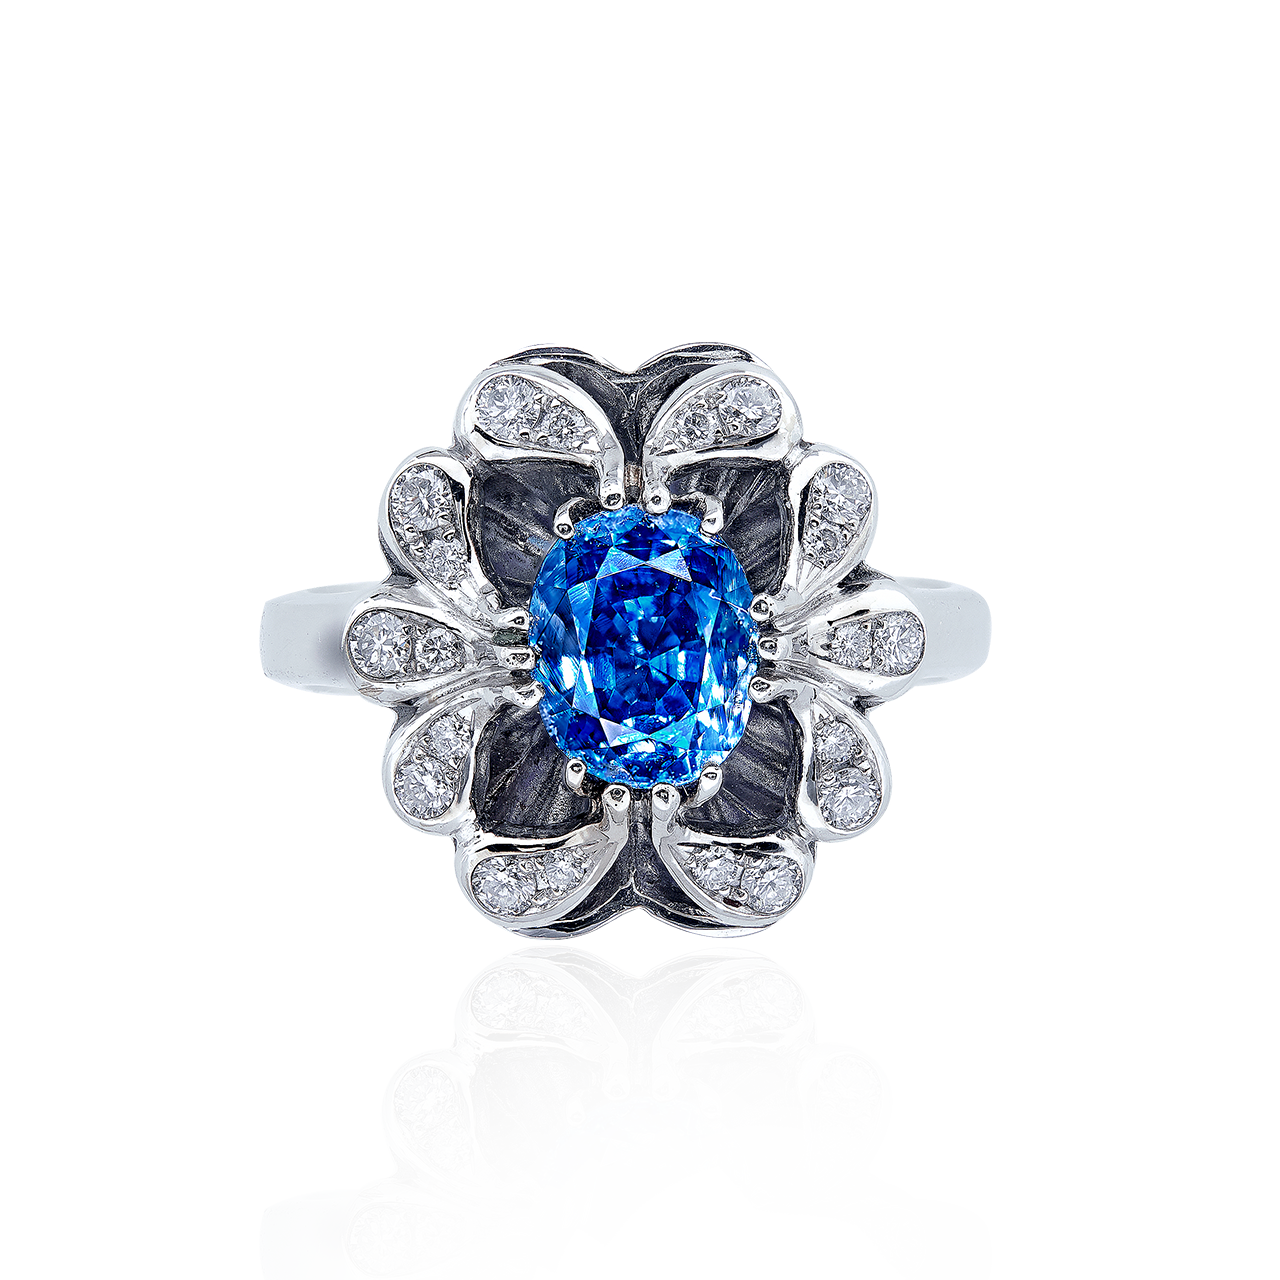 1.94CT「喀什米爾」天然無燒藍寶戒
BLUE SAPPHIRE AND DIAMOND RING